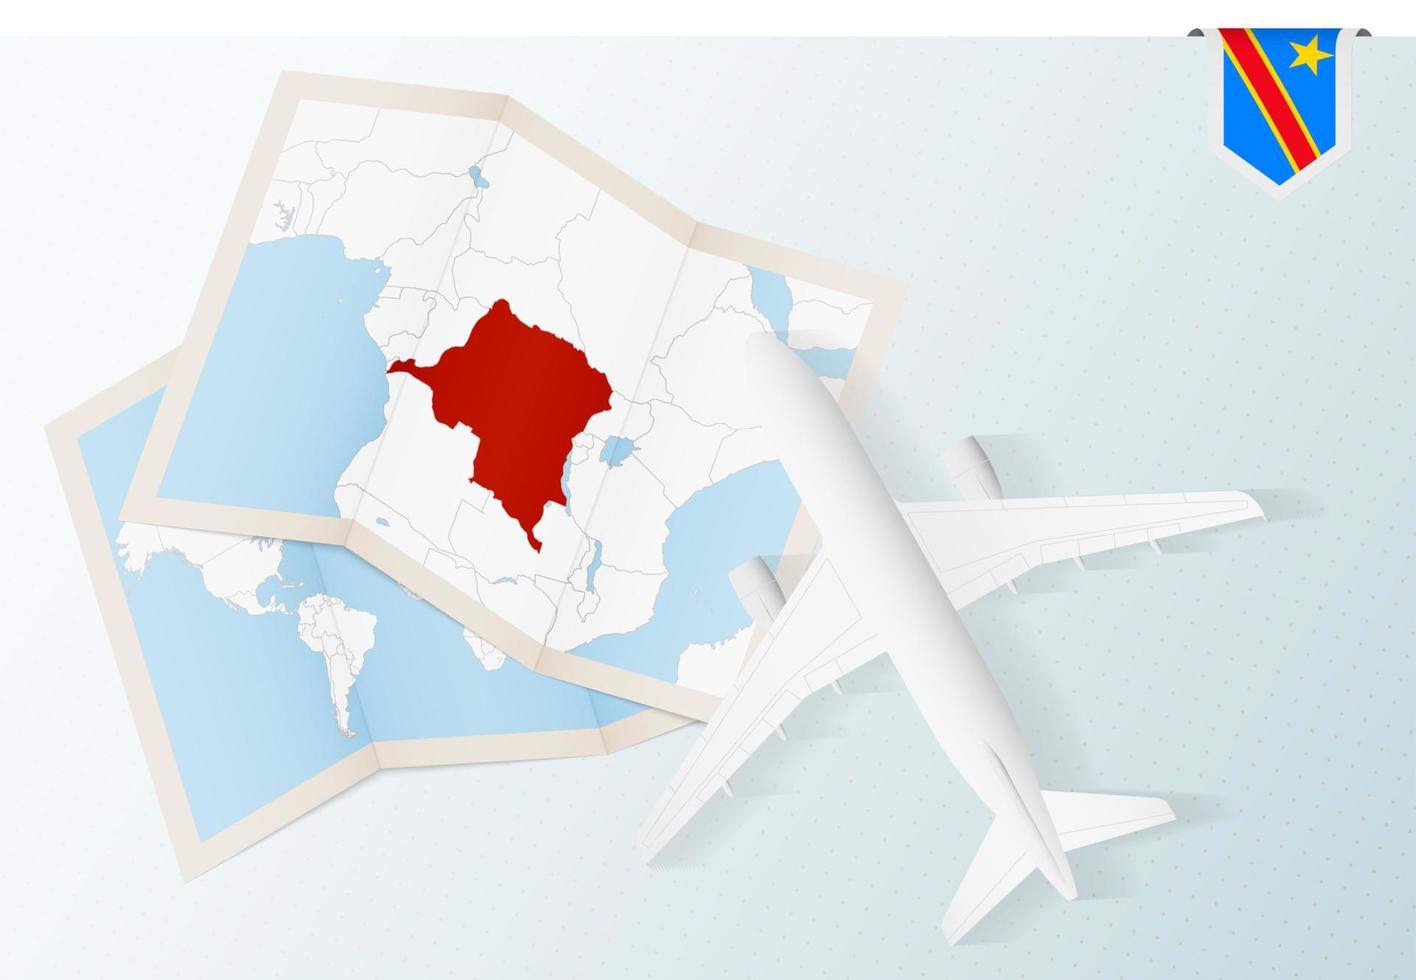 viaje a dr congo, avión de vista superior con mapa y bandera de dr congo. vector